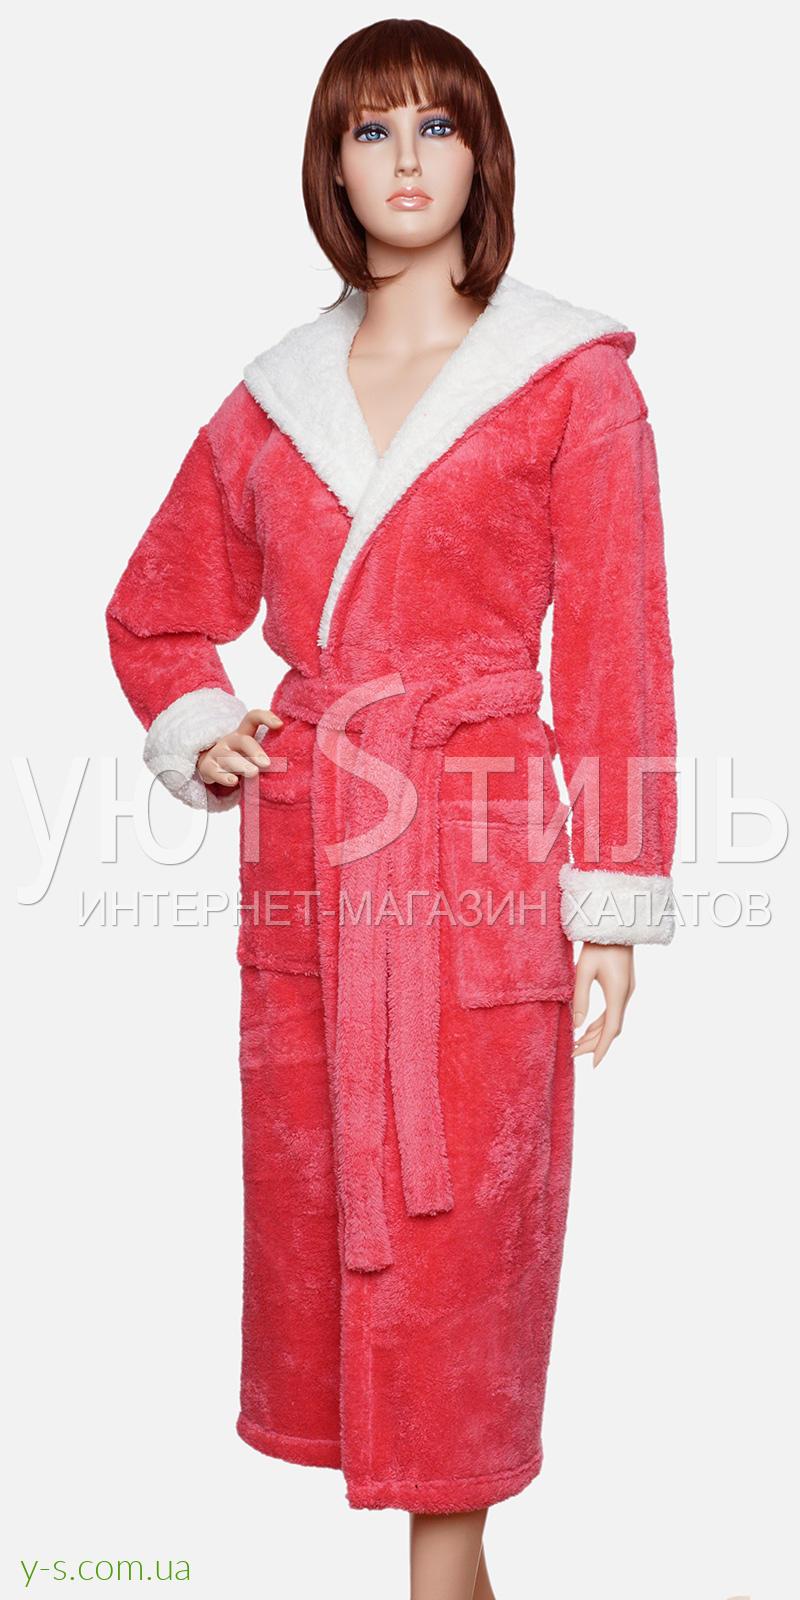 Пухнастий жіночий халат з капюшоном WM2003